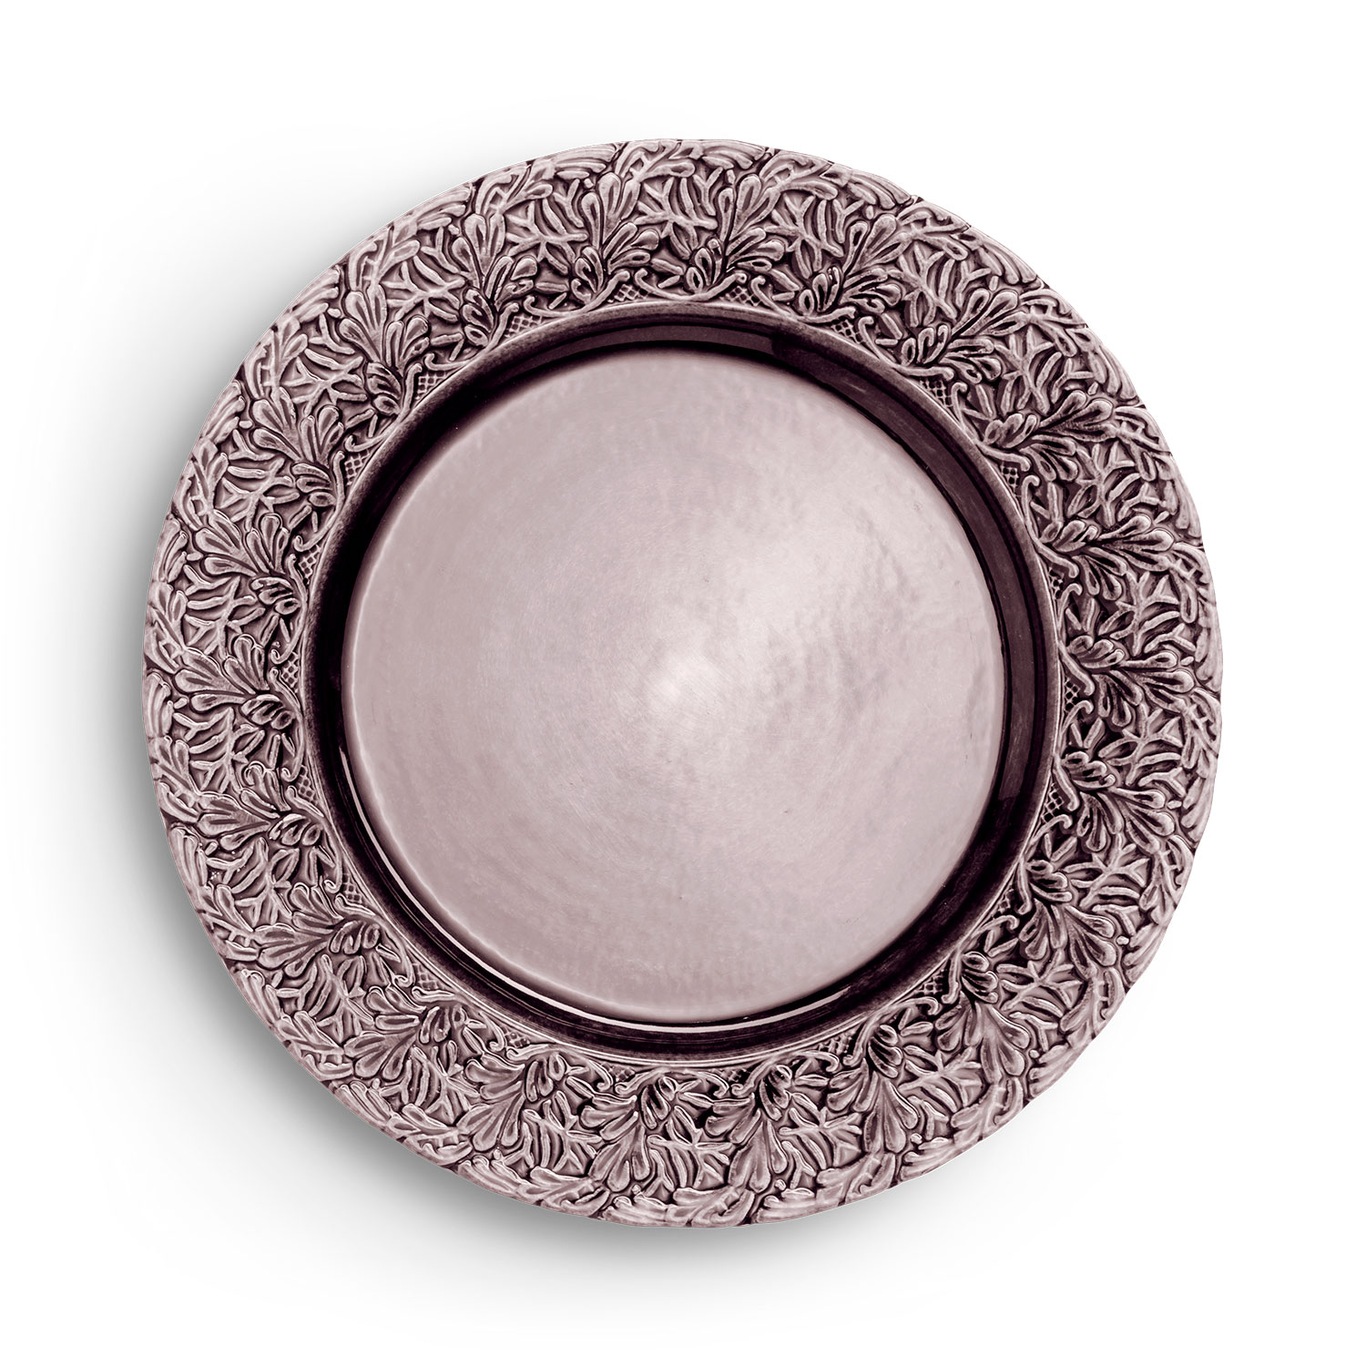 Lace Plate 25 cm, Plum